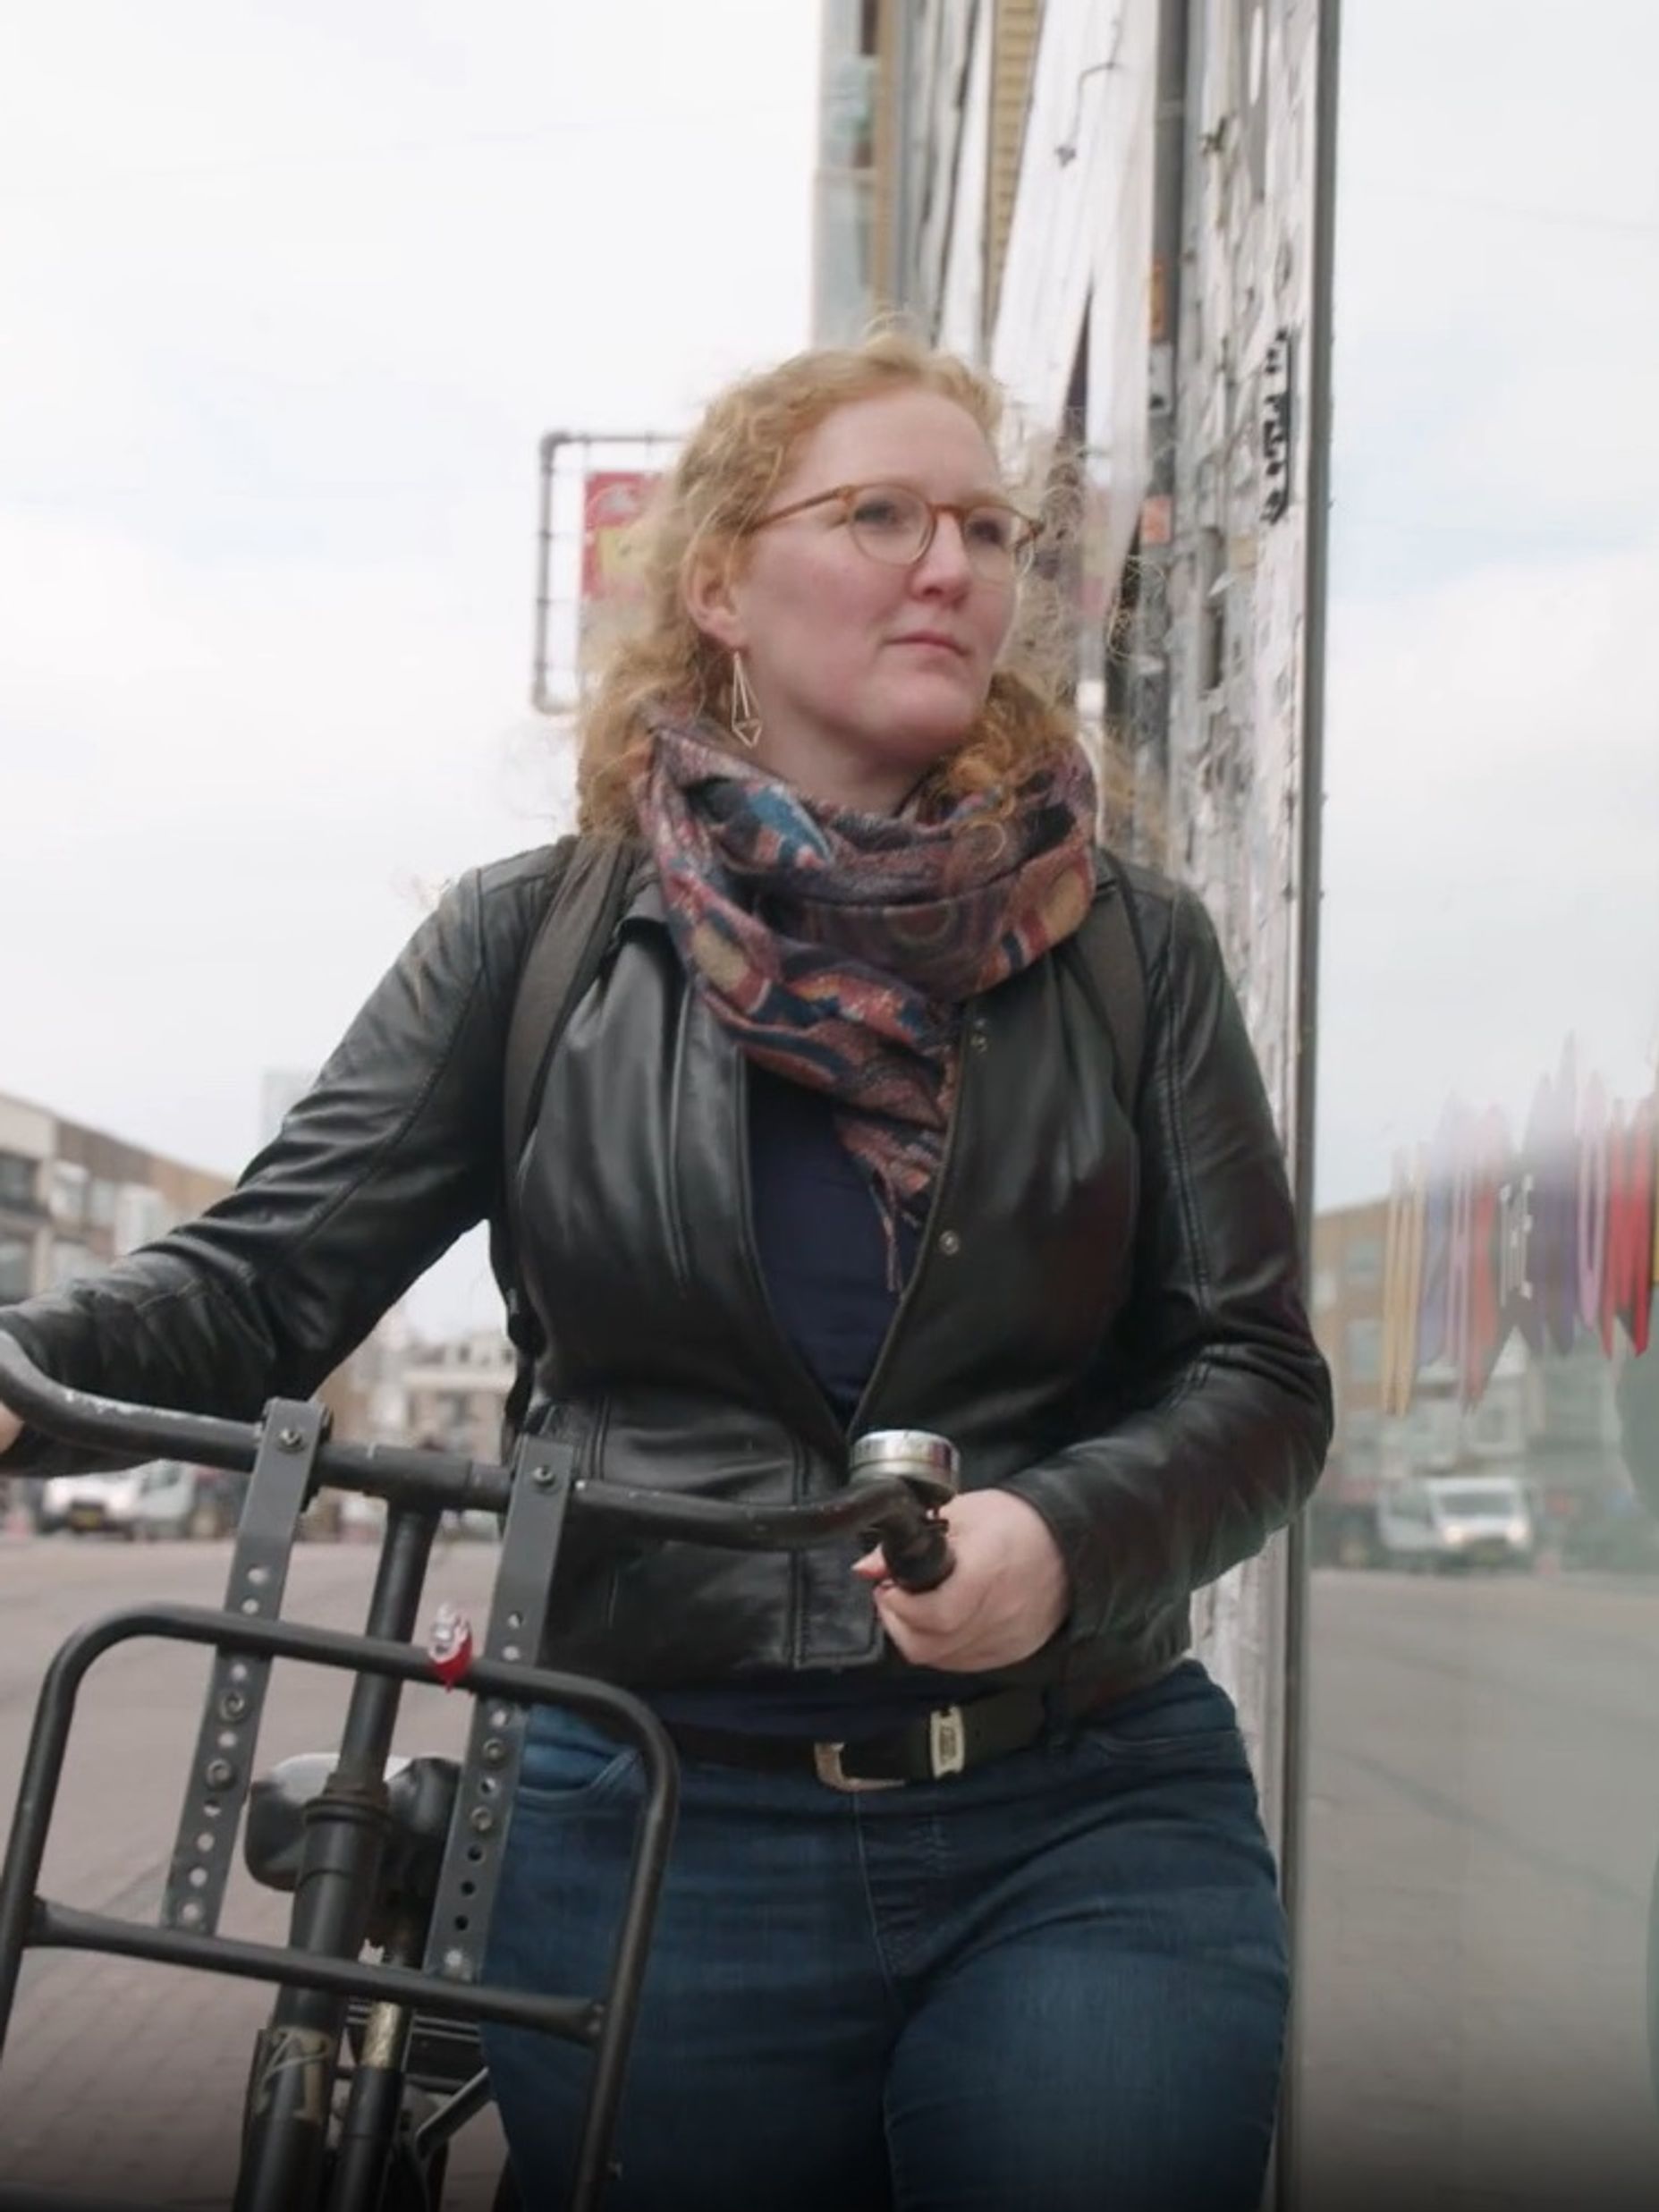 Vrouw loopt met fiets aan de hand door winkelstraat